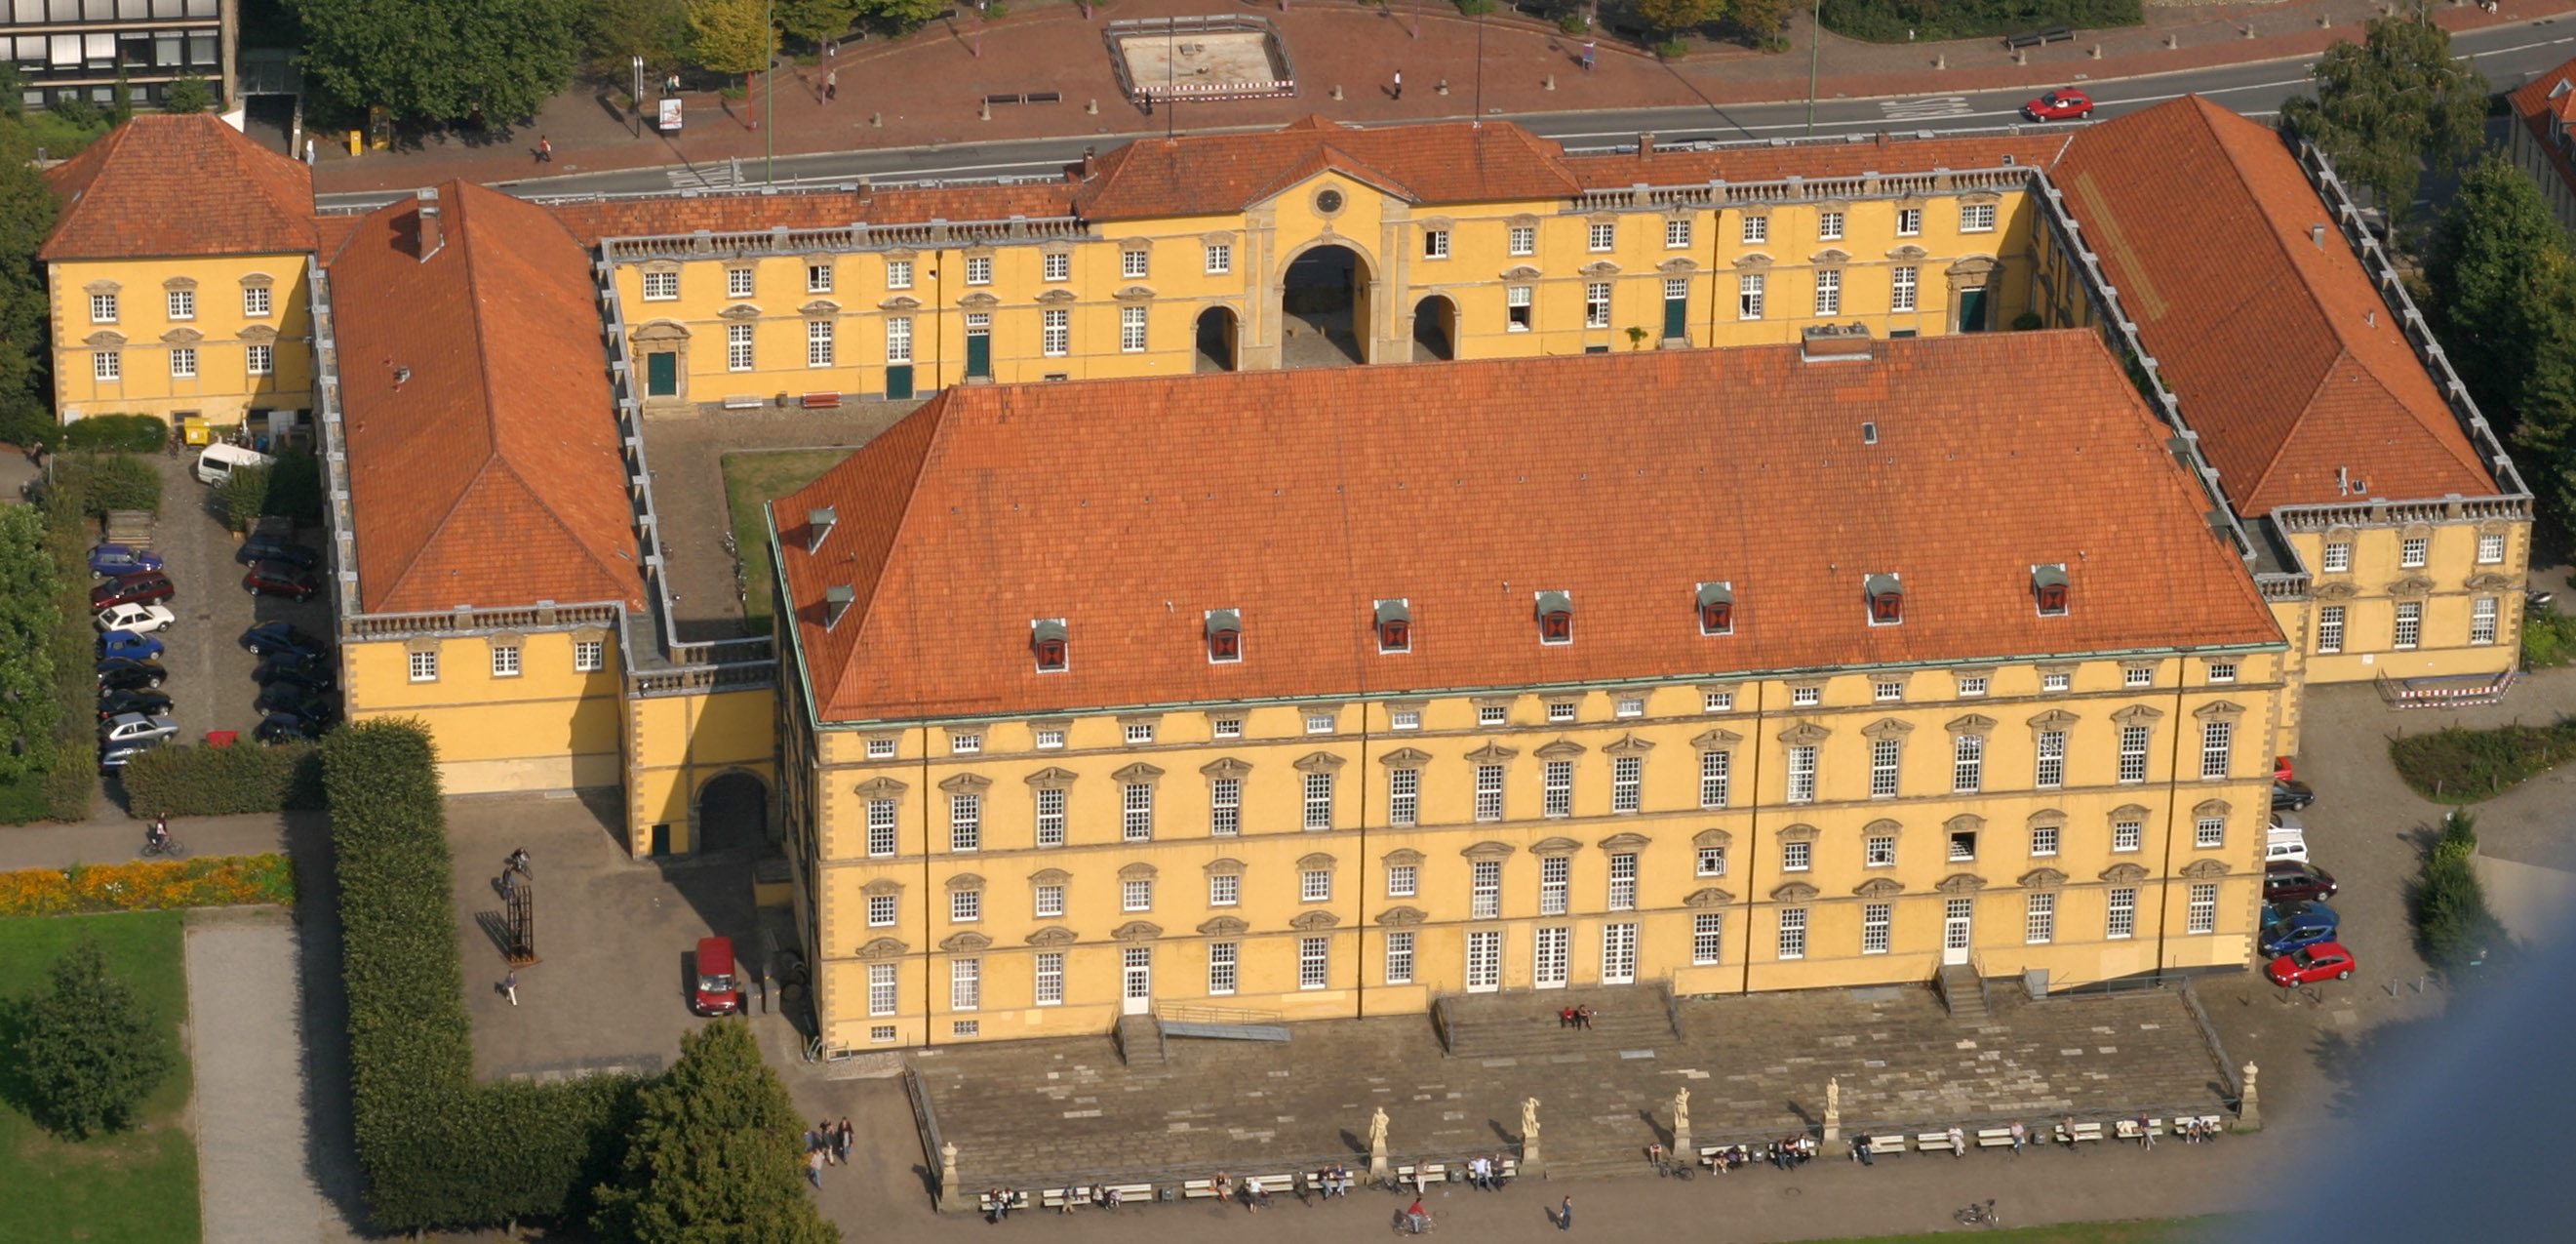 © Martin Jung / Universität Osnabrück. Das Osnabrücker Schloss aus der Luft betrachtet. 